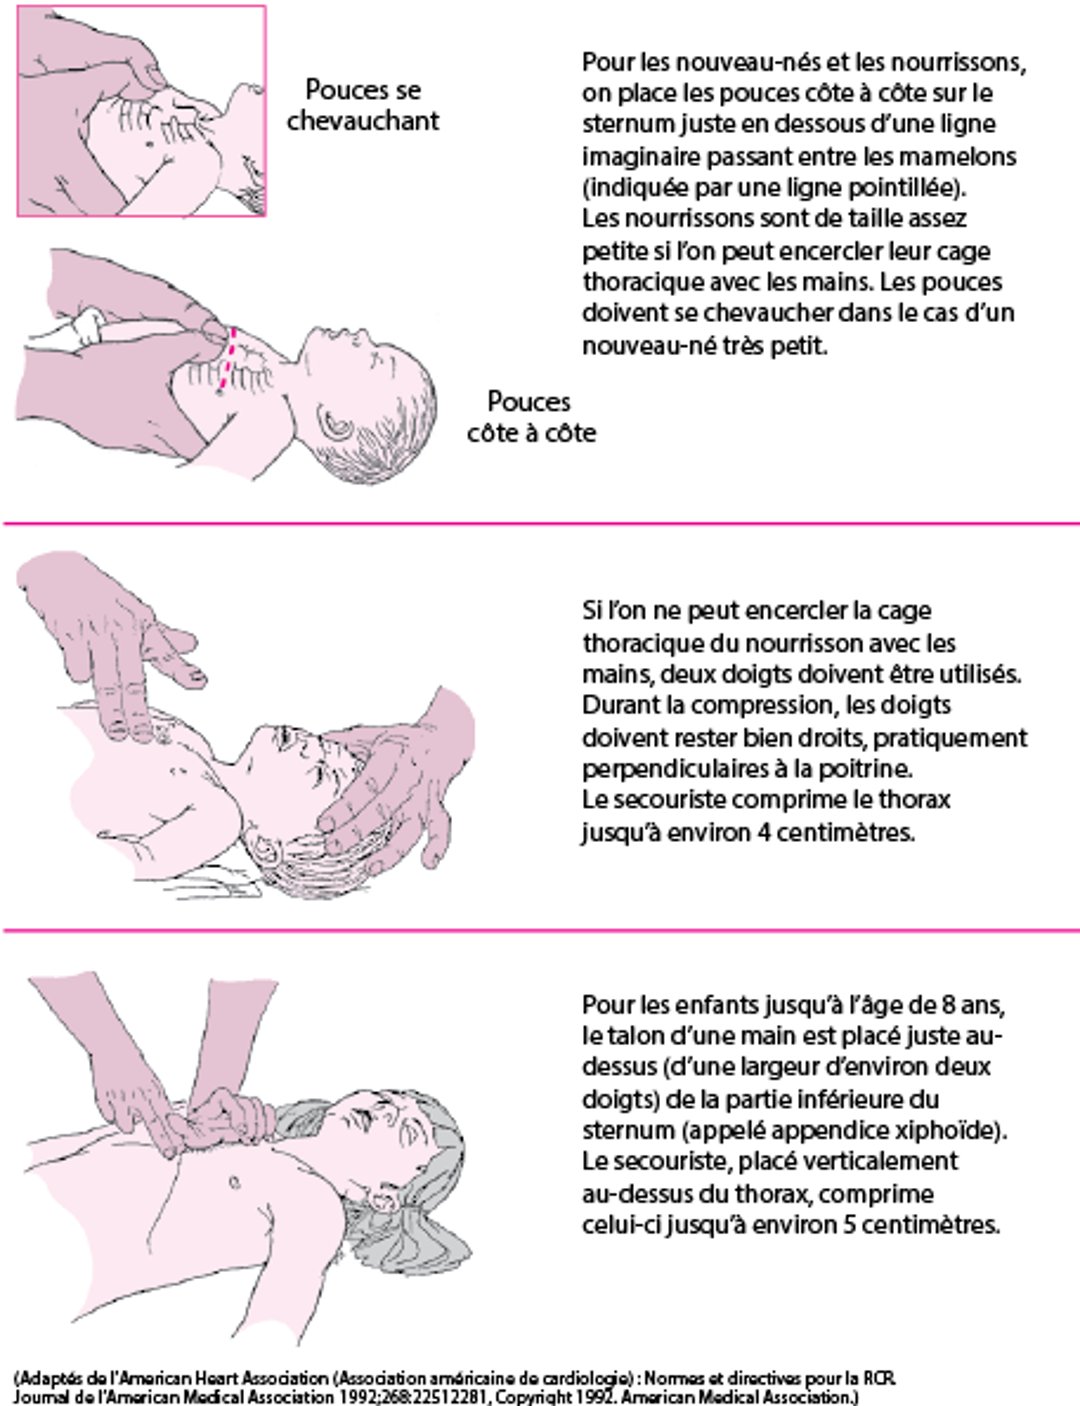 Pratiquer des compressions thoraciques chez un nourrisson